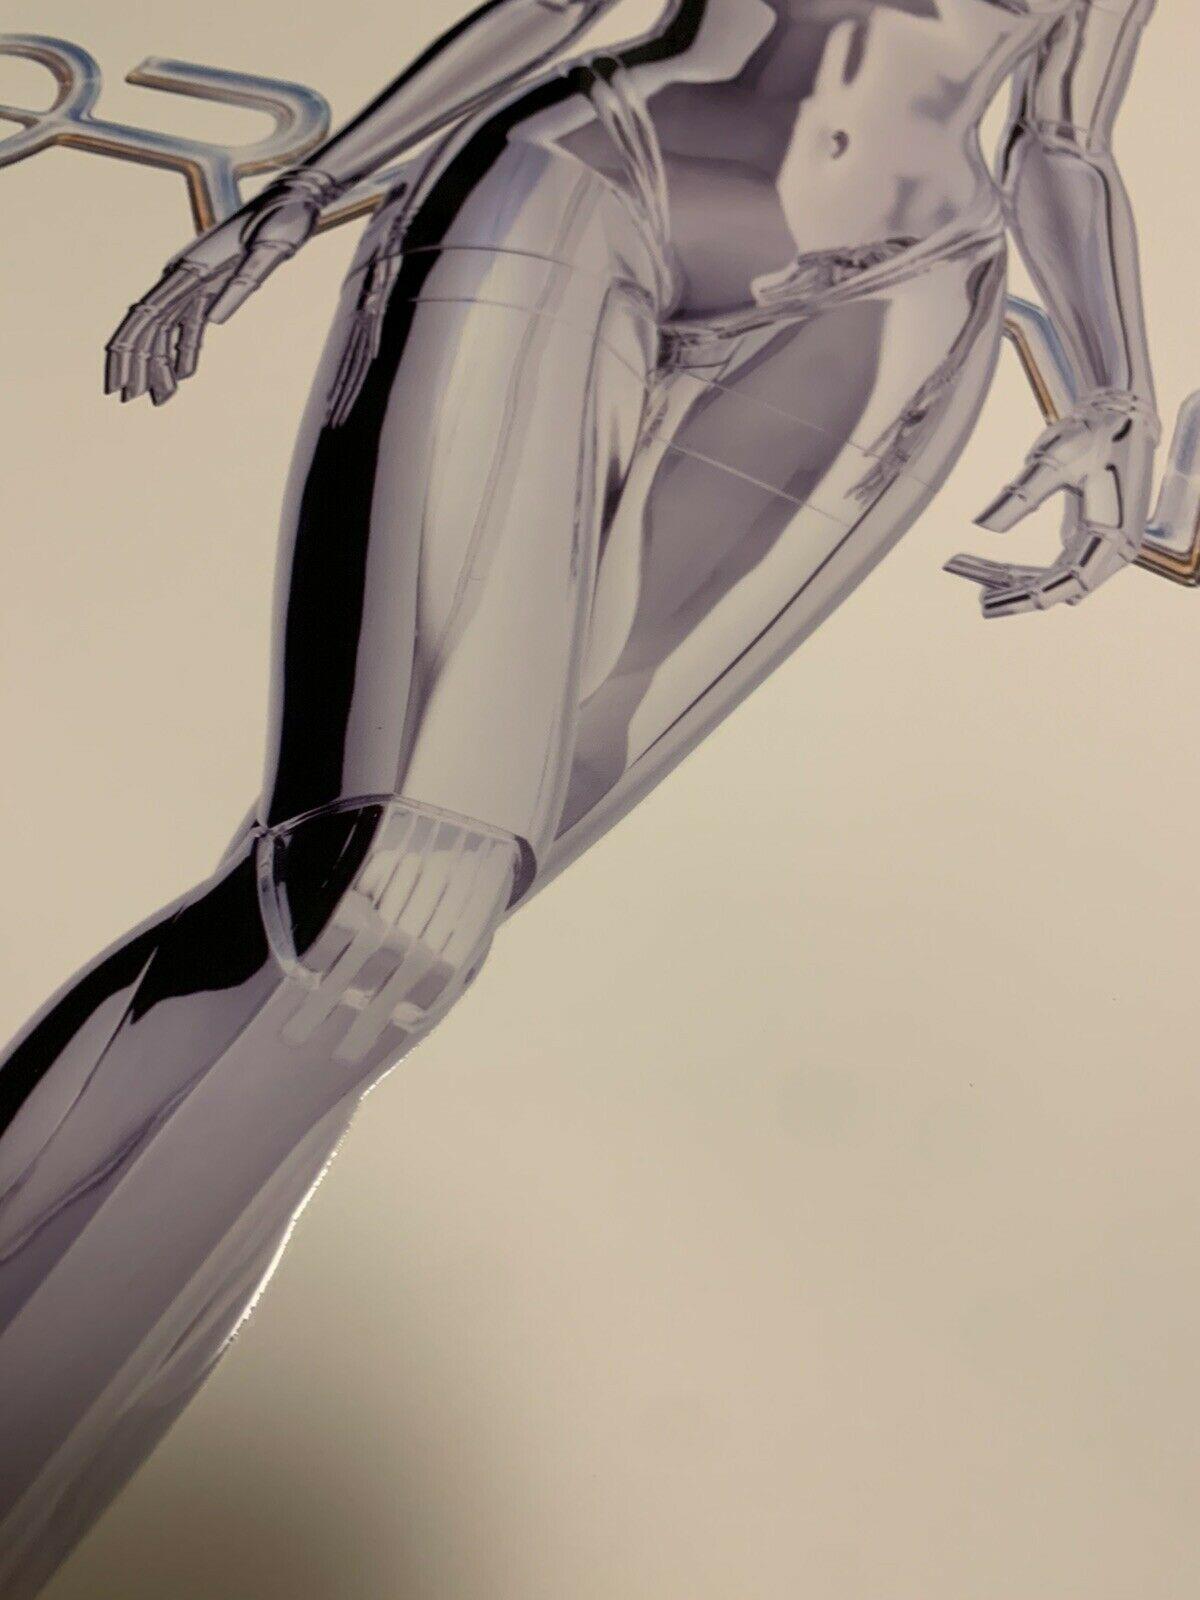 Hajime Sorayama (空山 基 Sorayama Hajime, geboren am 22. Februar 1947) ist ein japanischer Illustrator, der für seine detailgenauen, erotischen Darstellungen von 
feminisierte, biomechanoide Roboter und seine Designarbeit am originalen Sony